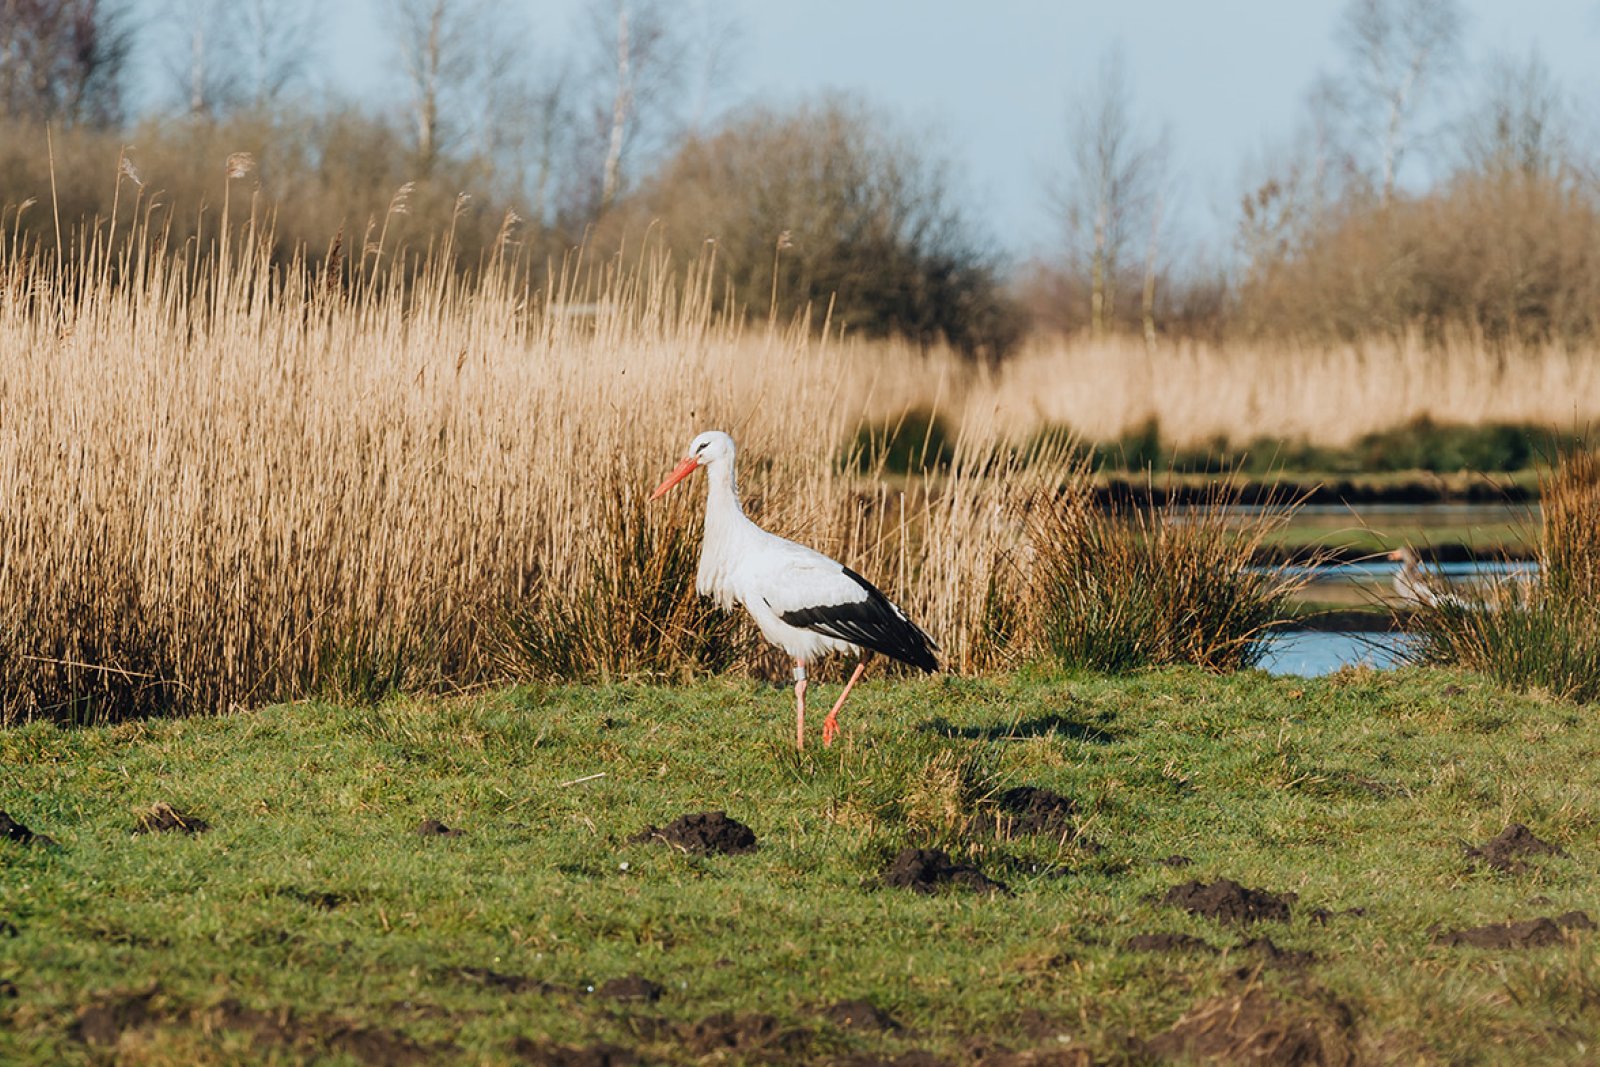 A stork walking in the Alde Feanen